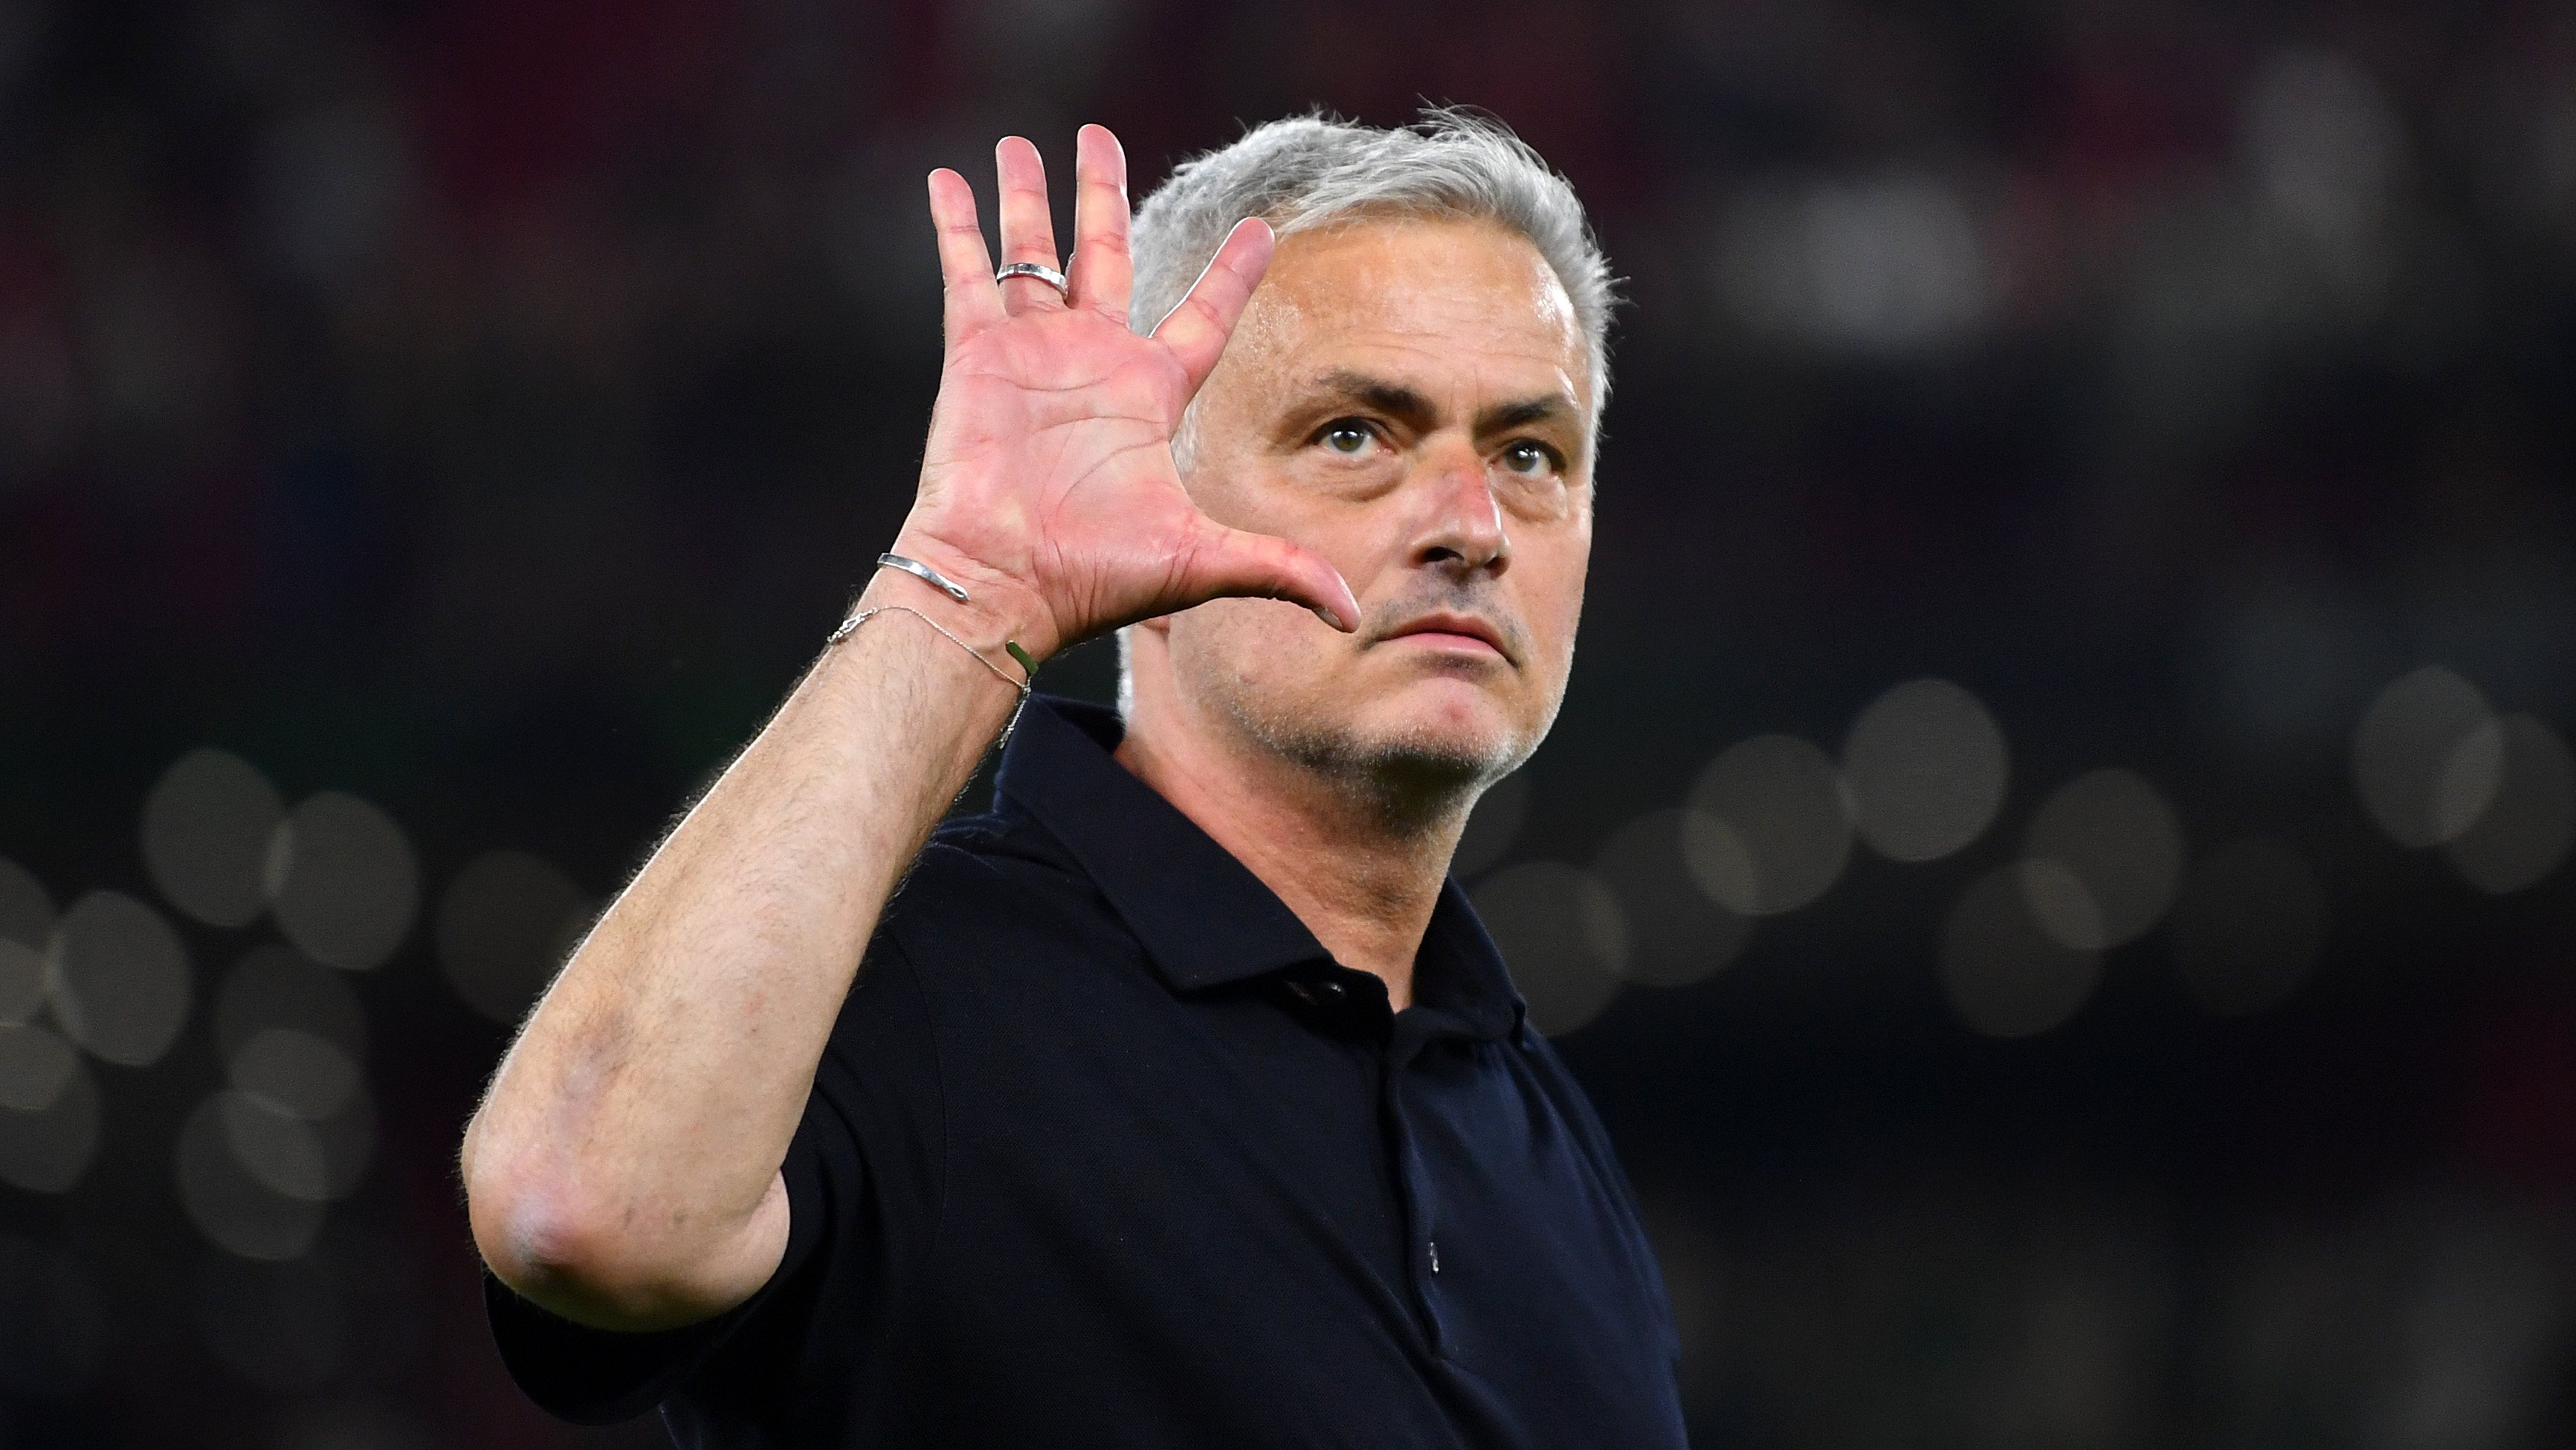 José Mourinho abriu a mão para mostrar os cinco dedos que representam as conquistas europeias em três décadas diferentes